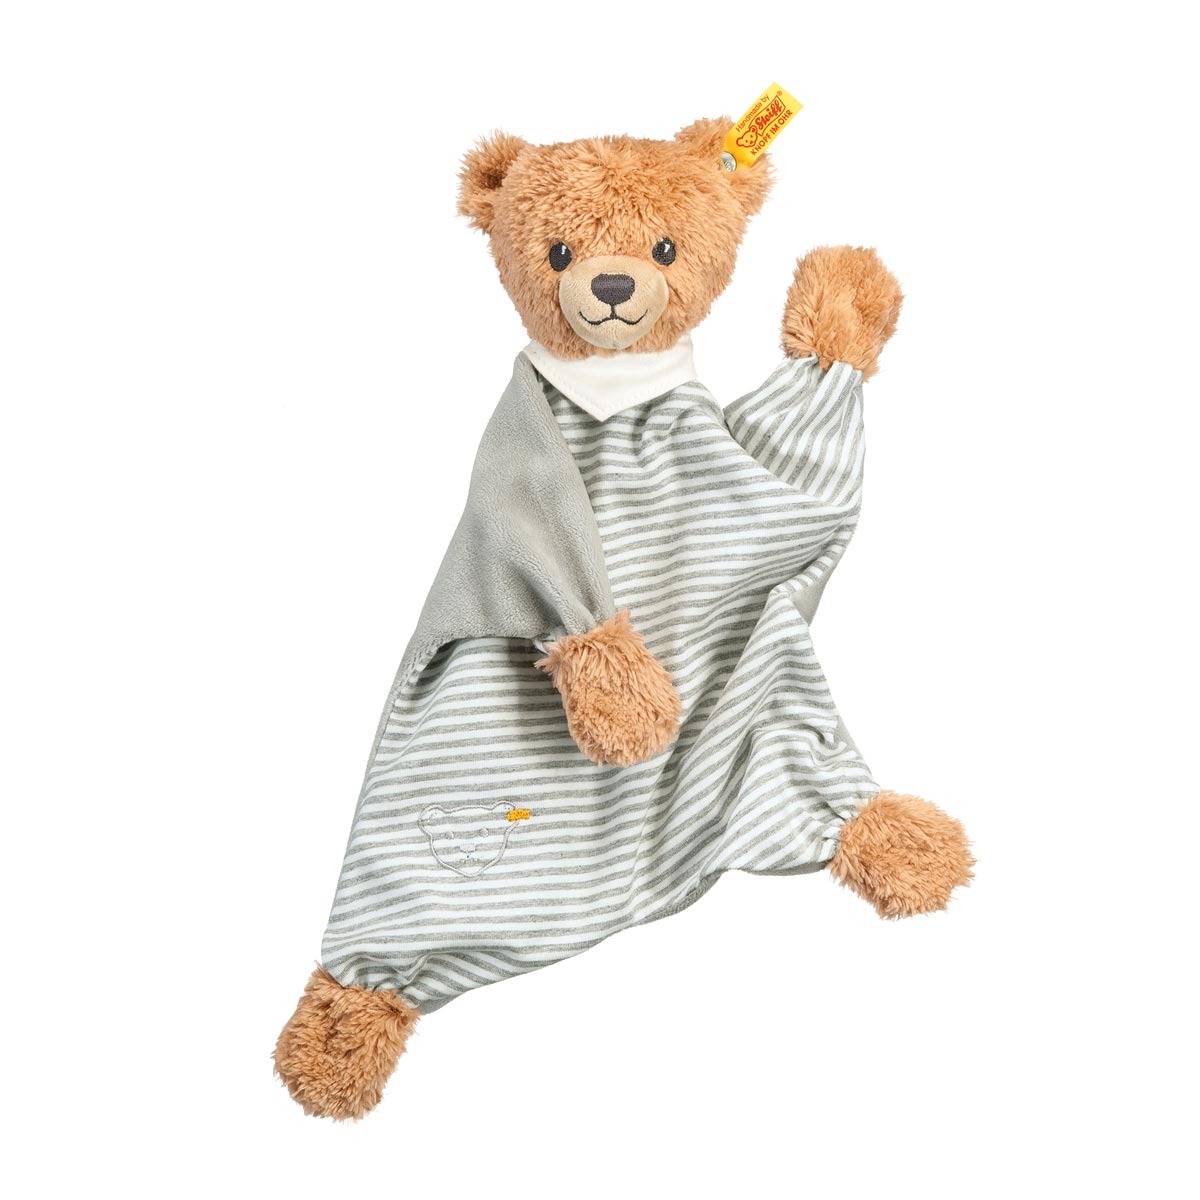 Steiff Sleep Well Grey Teddy Bear Comforter - 30 cm